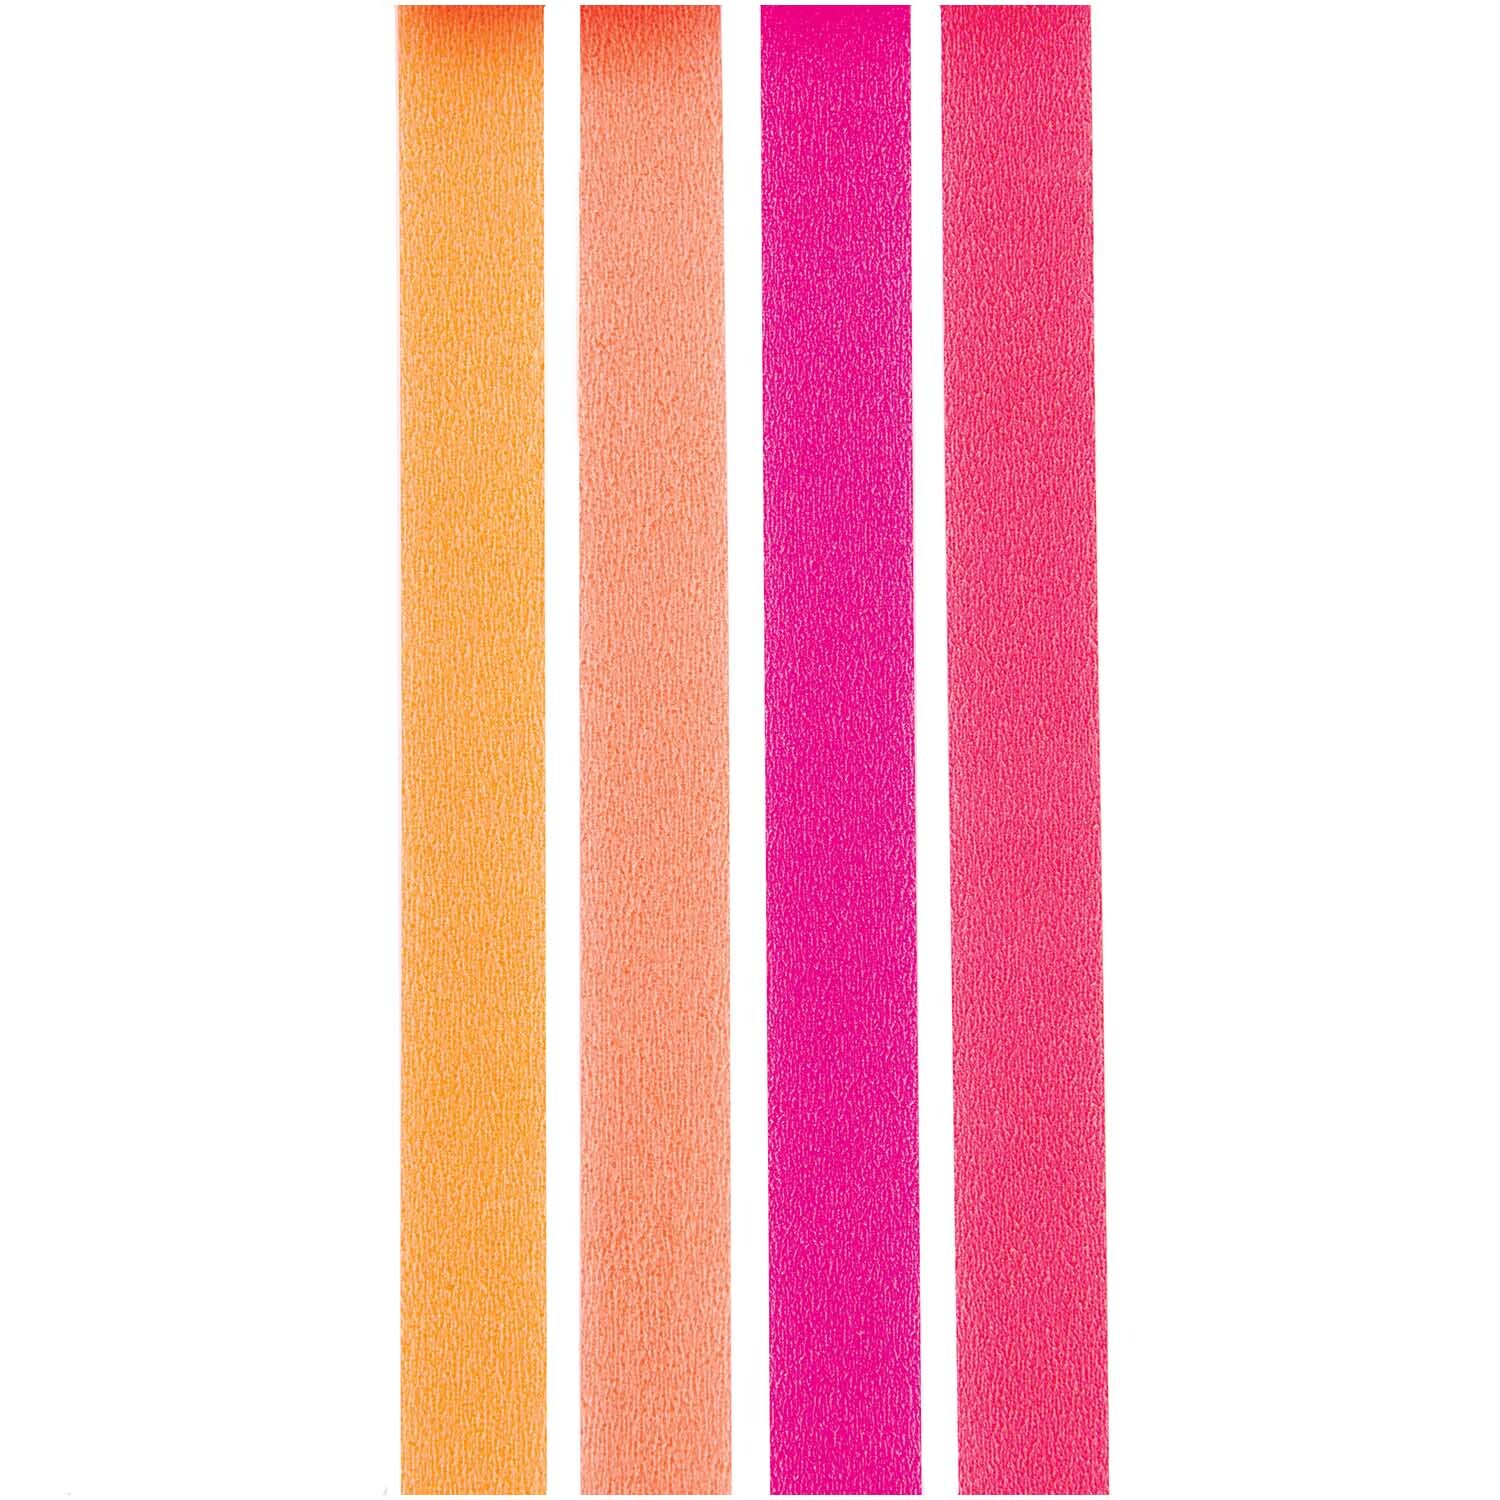 Paper Poetry Tape Set Neon Rottöne 15mm 10m 4teilig